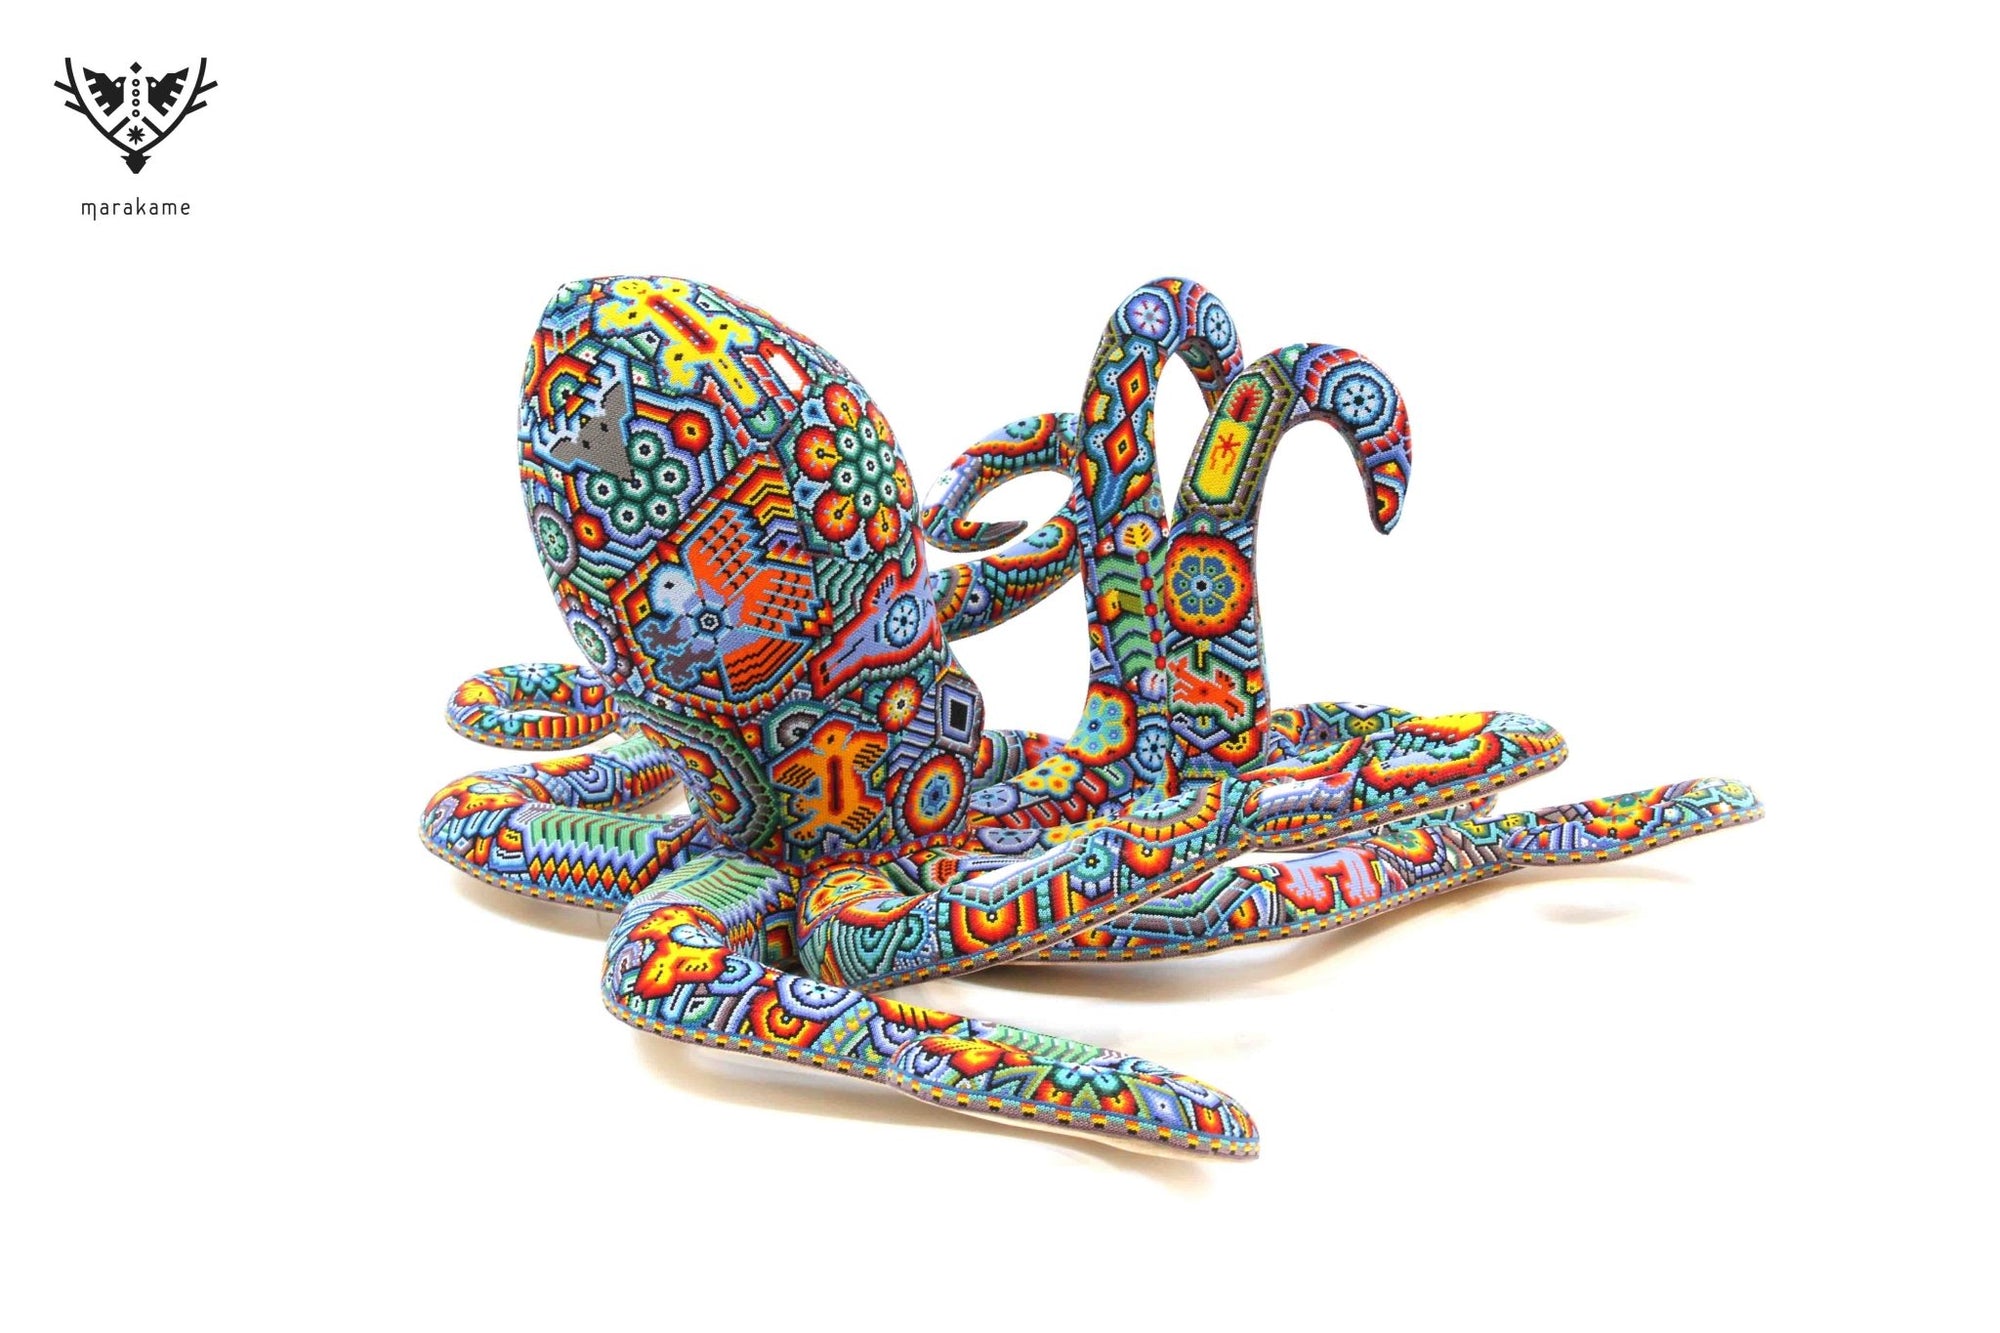 Huichol Squid Art Sculpture - Haramara - Huichol Art - Marakame